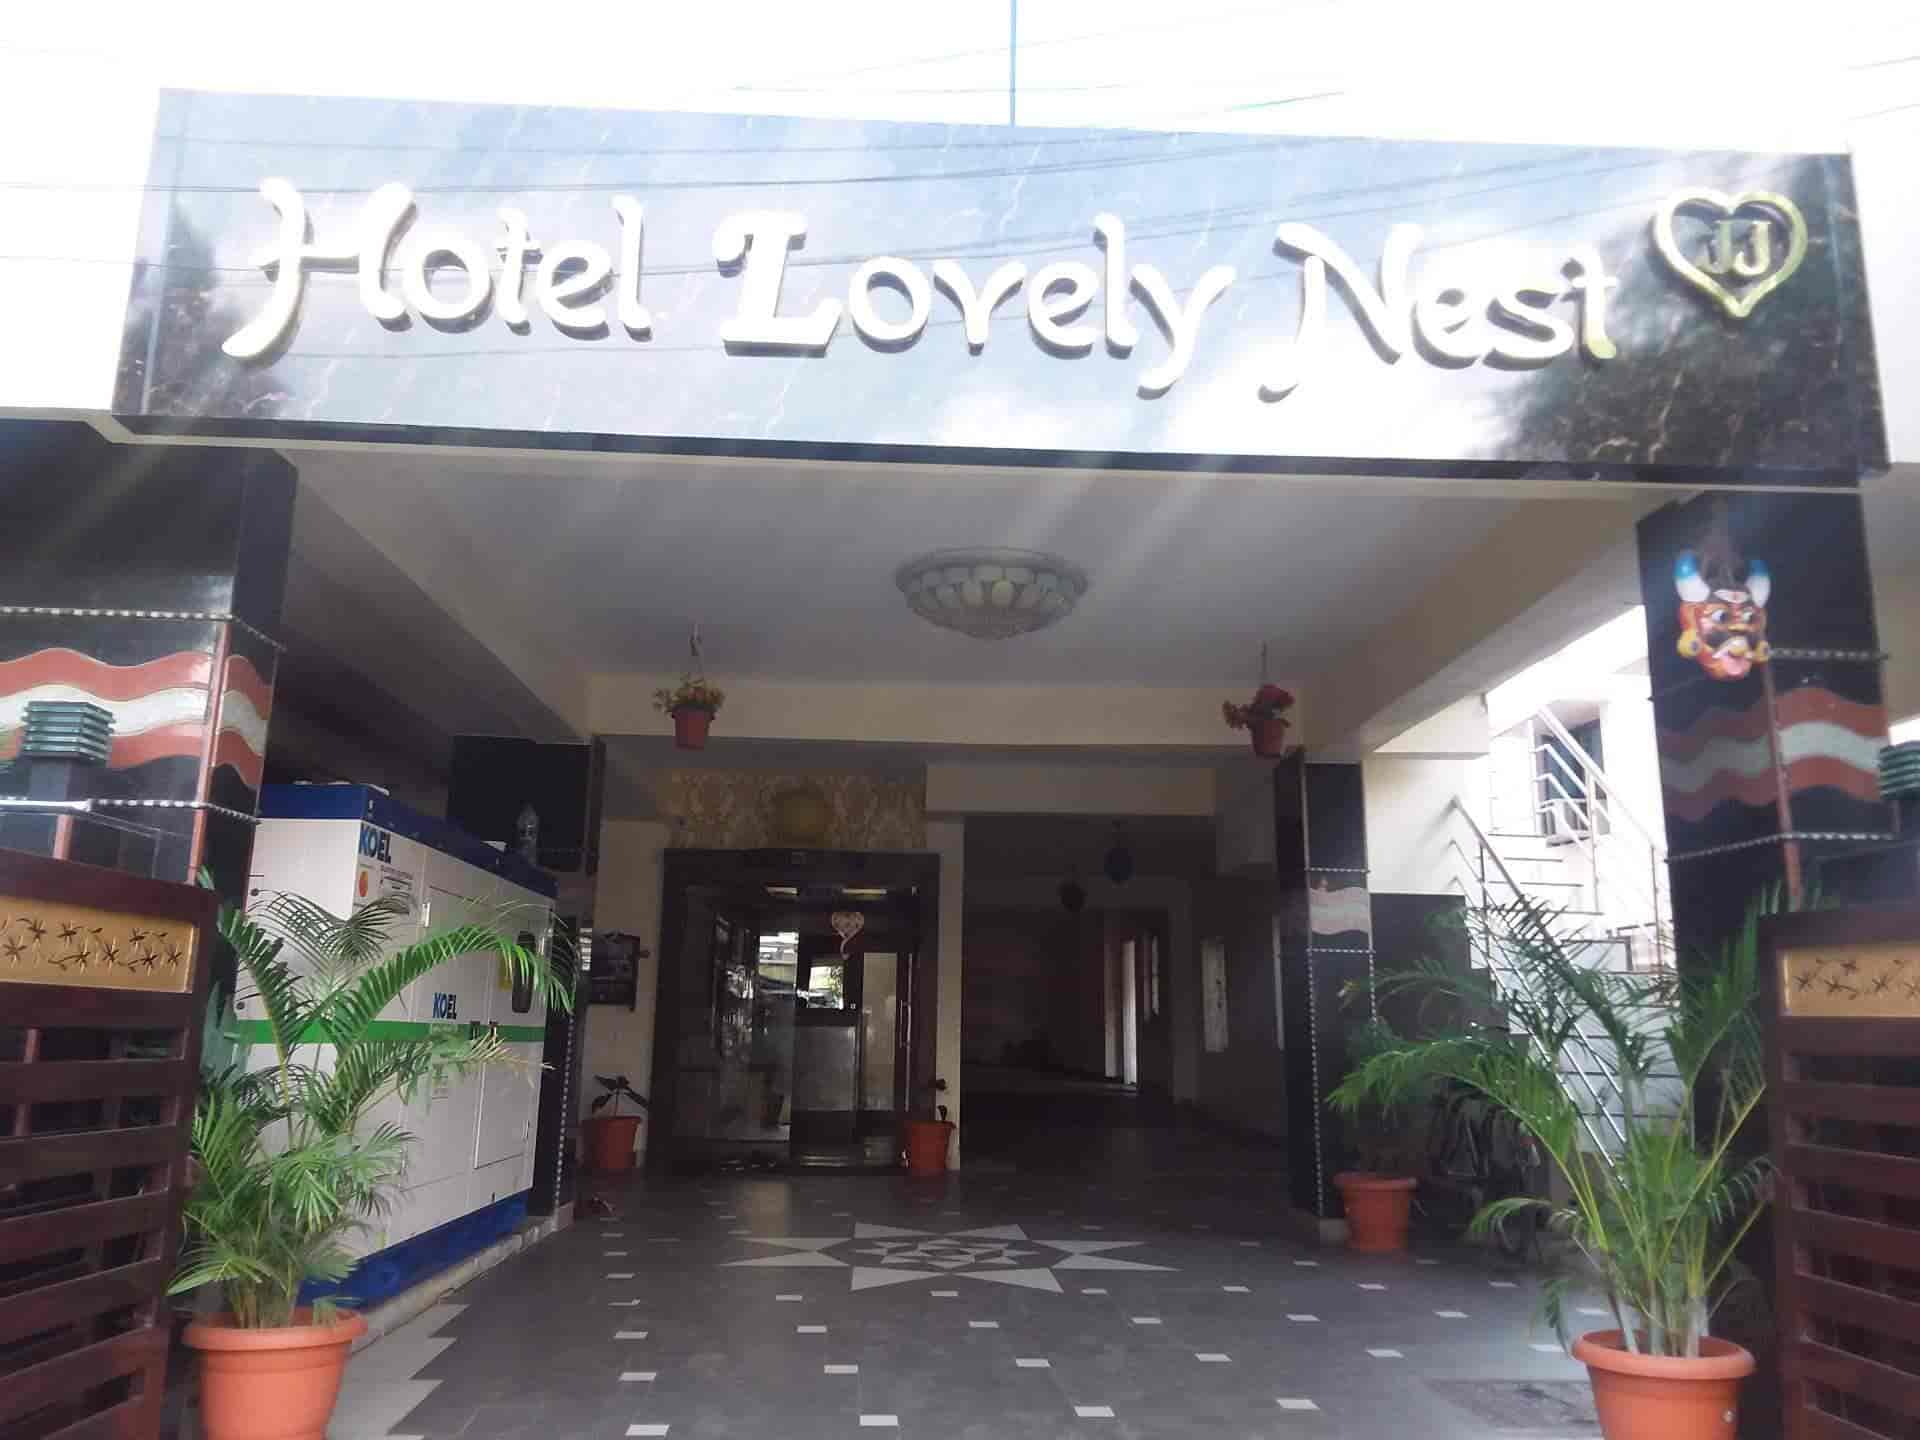 hotel lovely nest